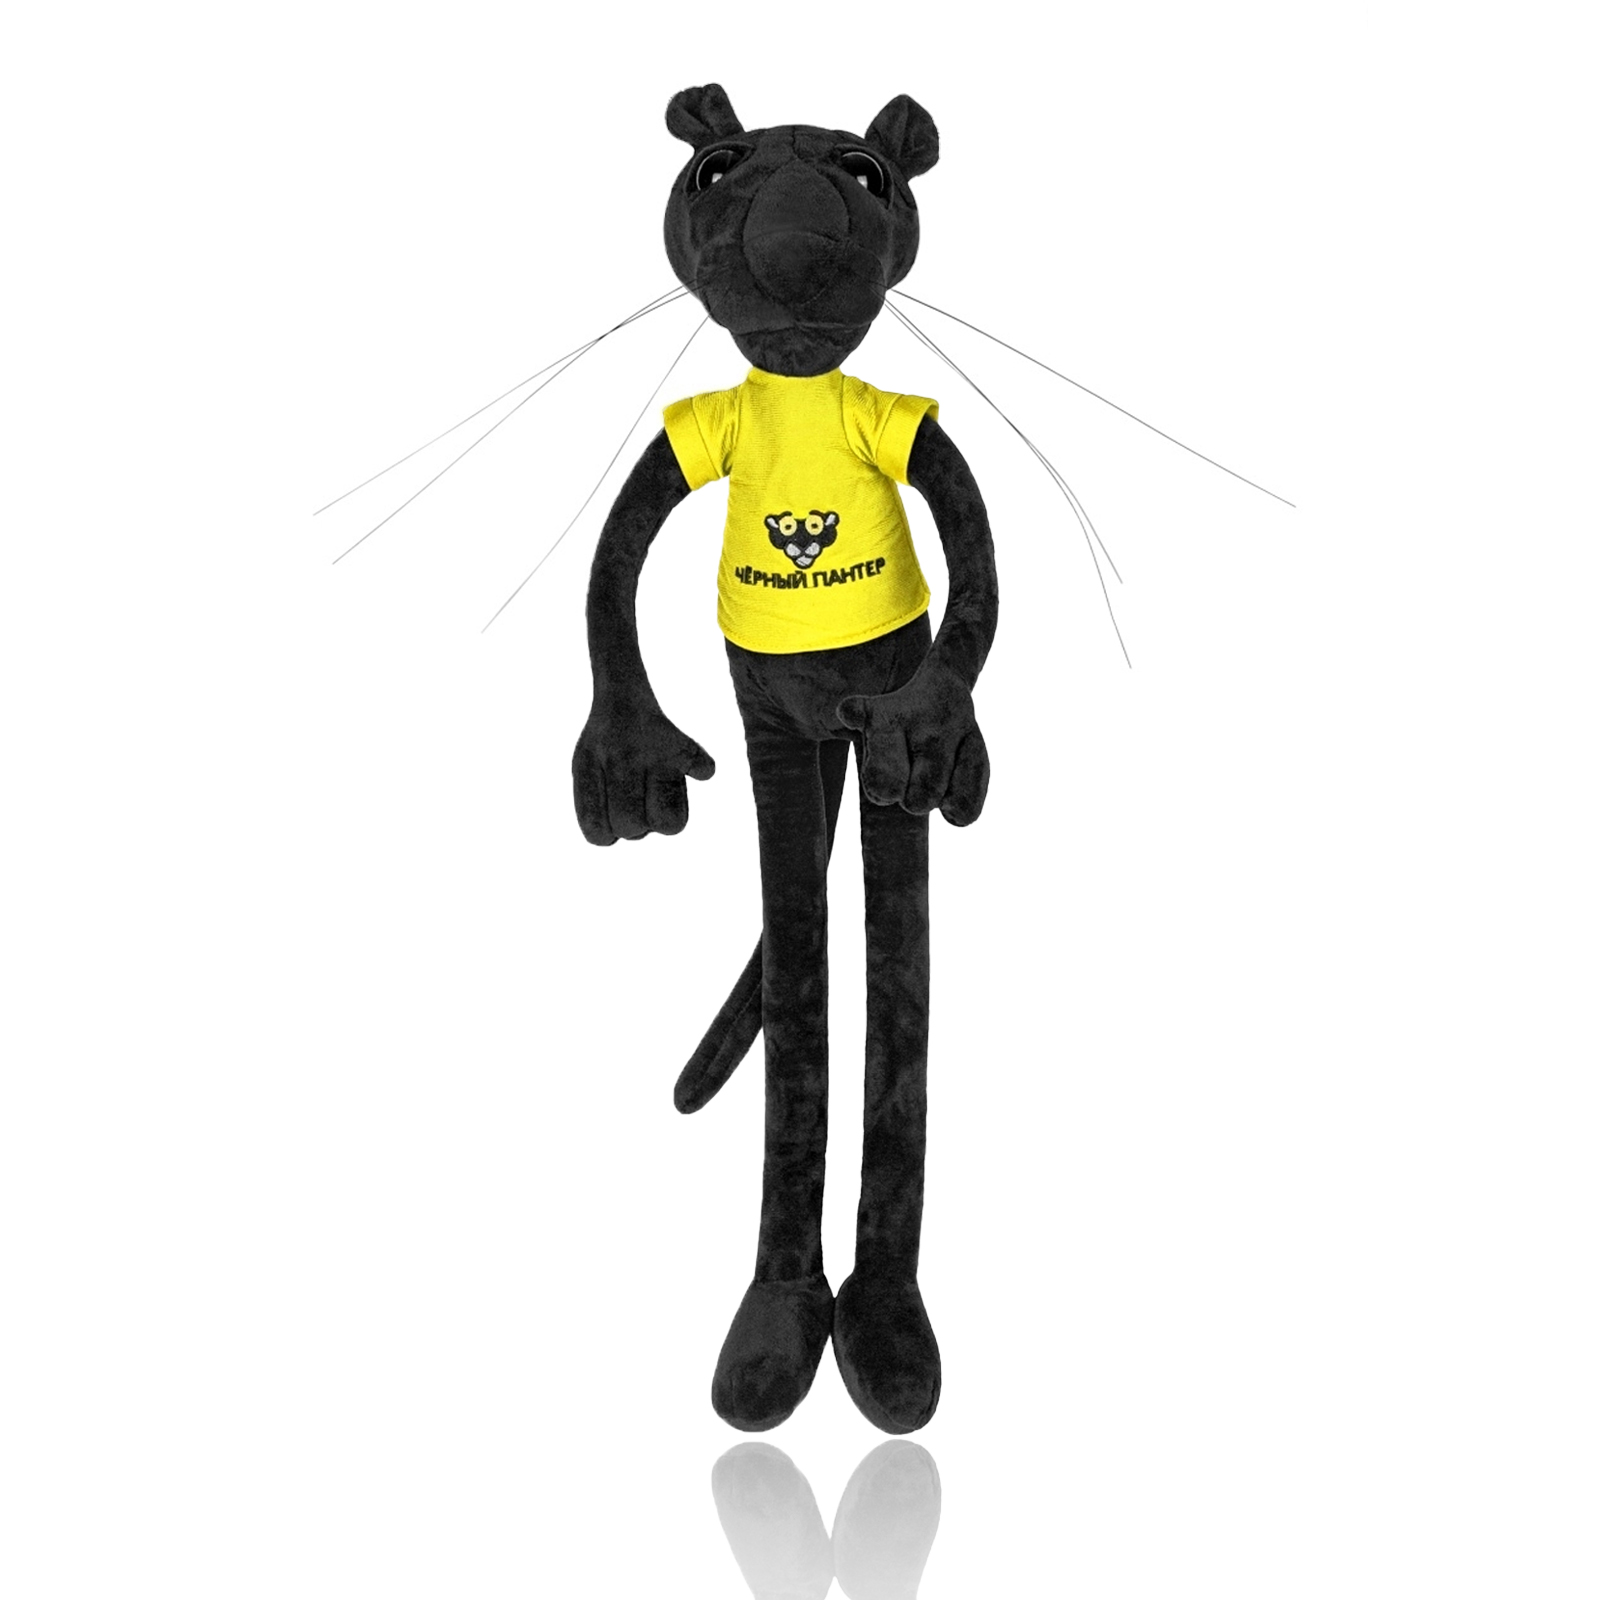 Мягкая игрушка Nano Shop Черная Пантера в желтой футболке, 100 см чёрная пантера black panther из фильма черная пантера марвел